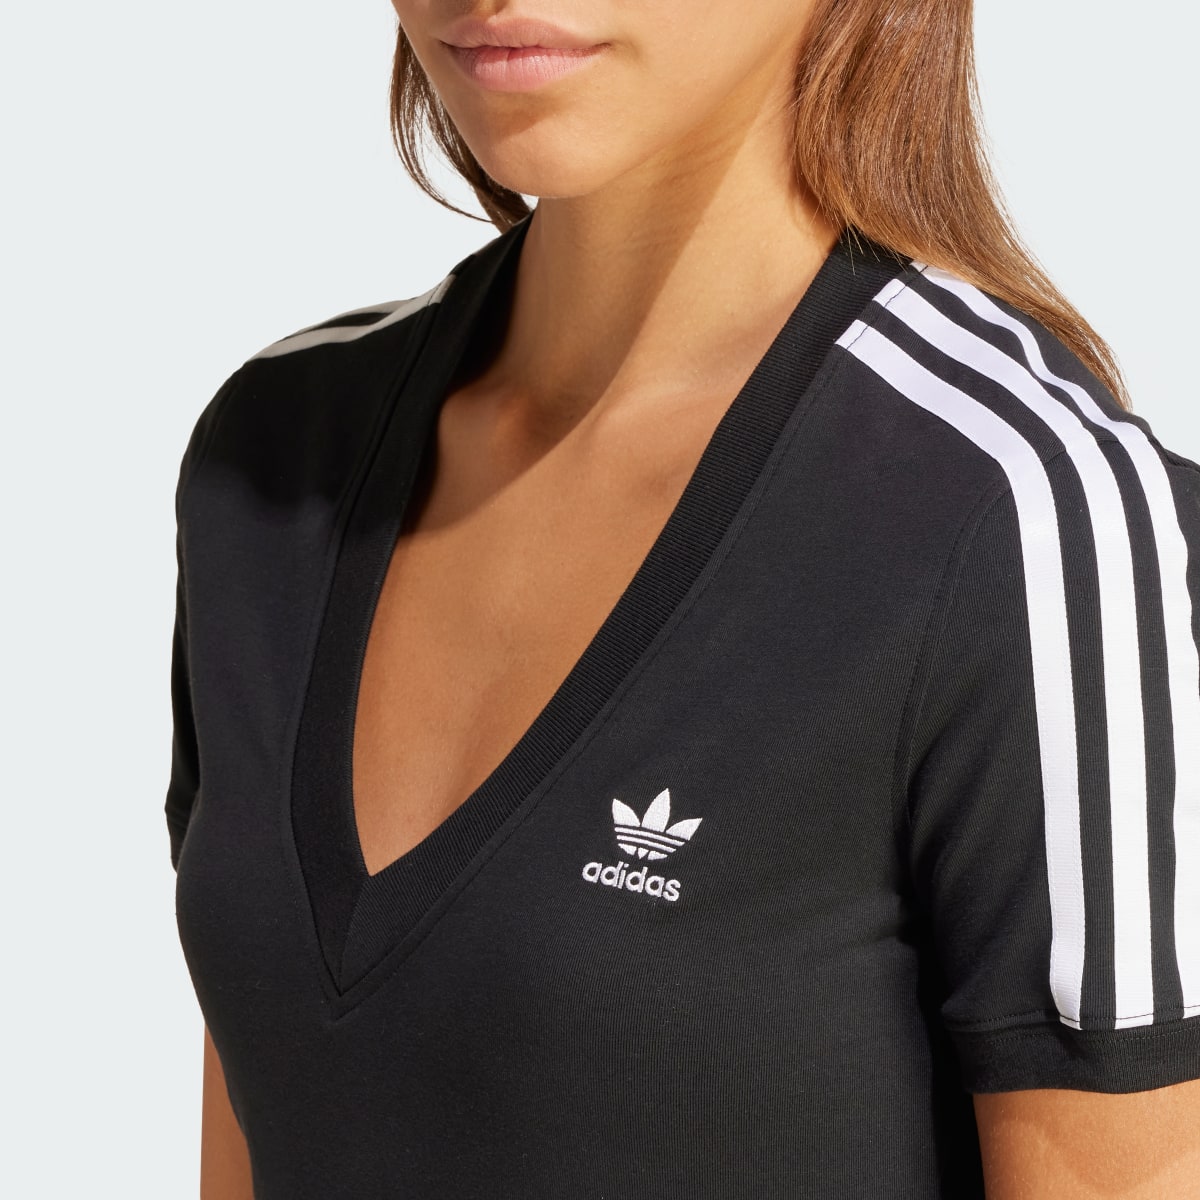 Adidas Koszulka 3-Stripes V-Neck Slim. 6